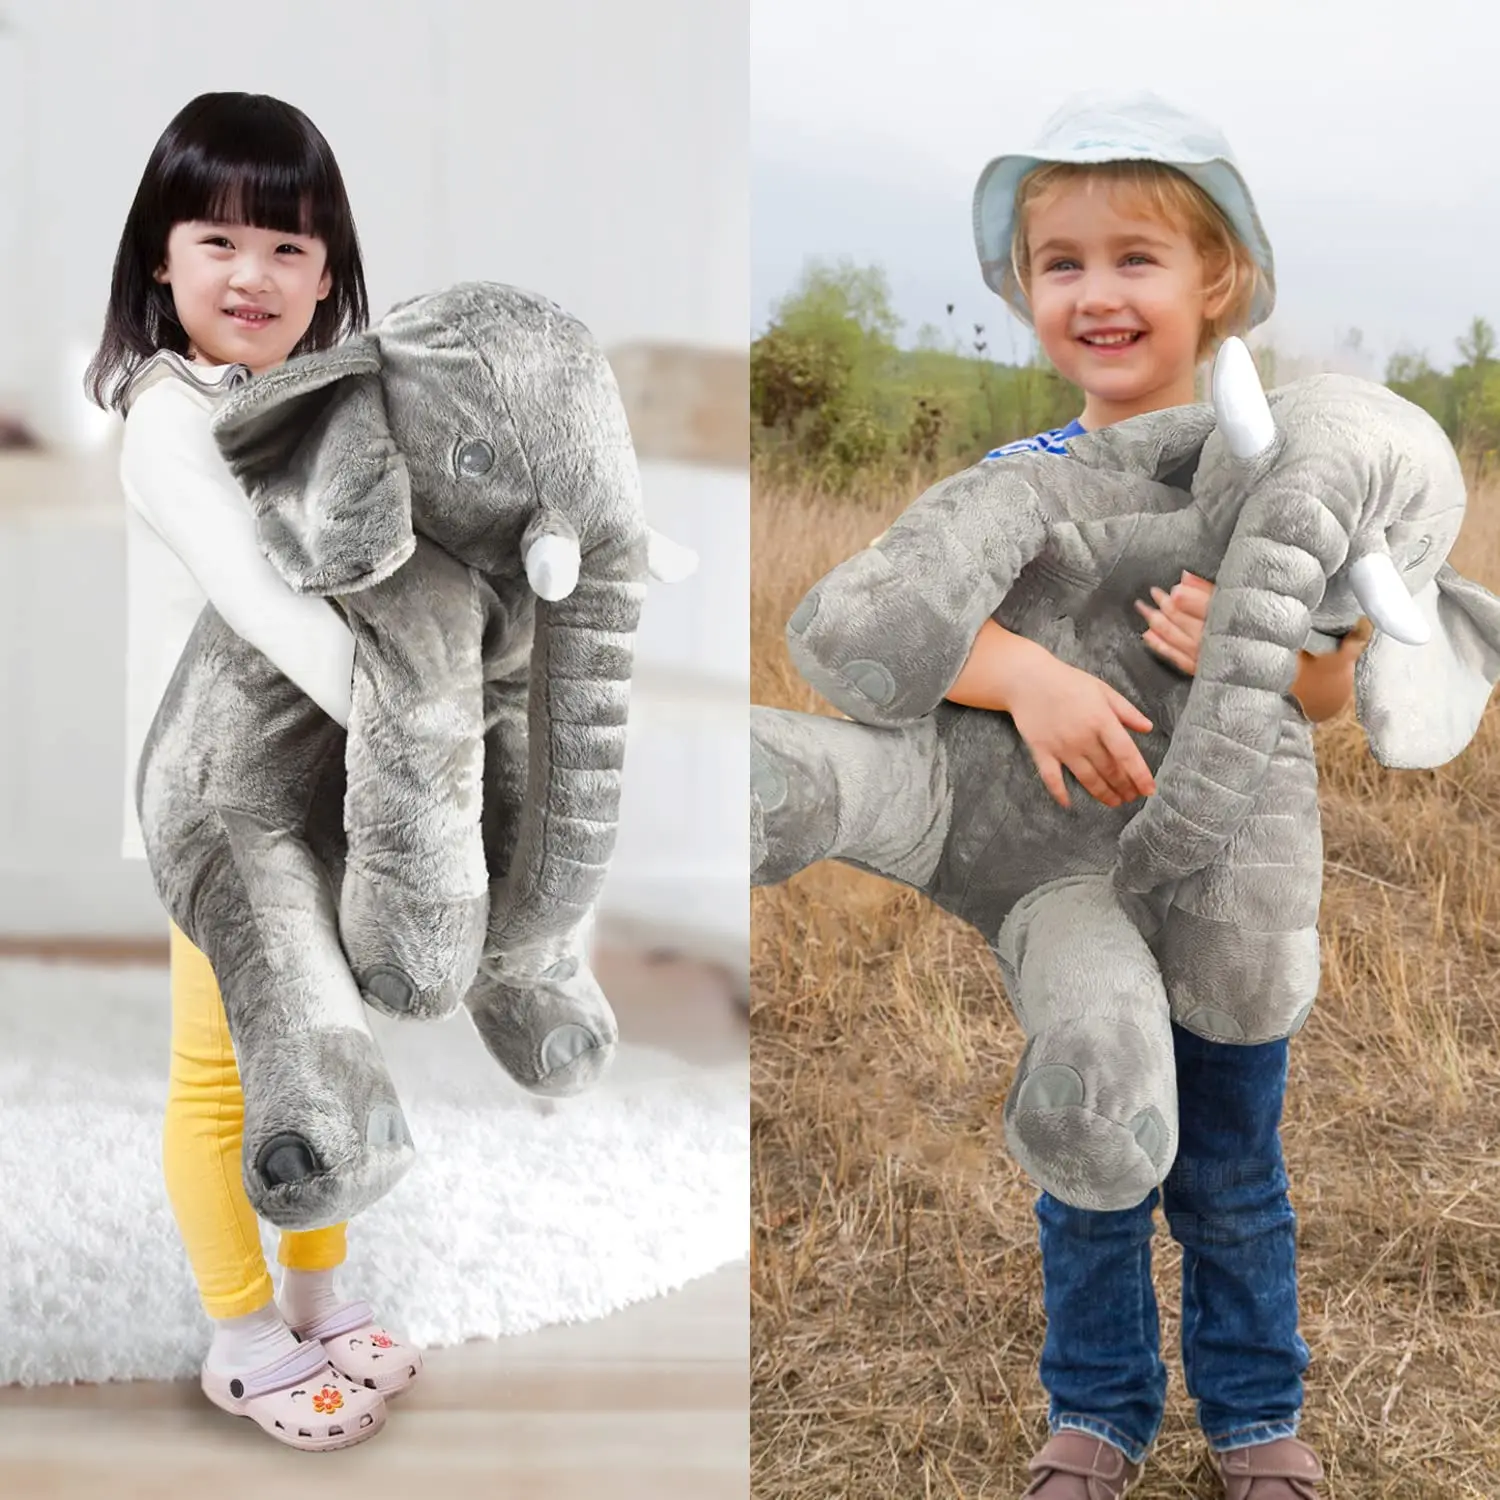 

40cm Height Large Plush Elephant Plush Toy Kids Sleeping Back Cushion Cute Stuffed Soft Elephant Baby Accompany Doll Xmas Gifts